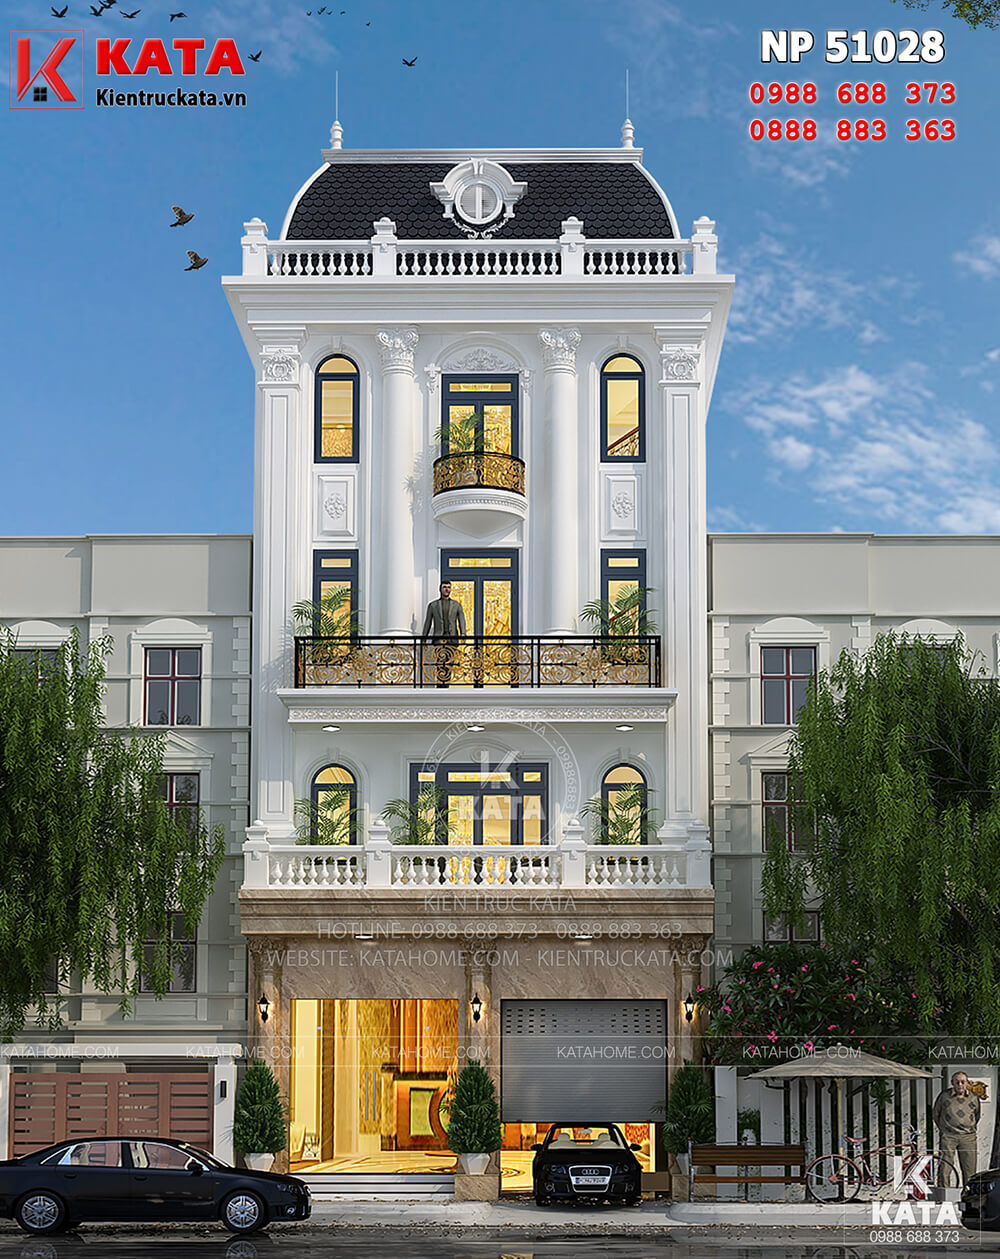 Mẫu thiết kế khách sạn nhà phố tại Hà Nội - Mã số: NP 51028